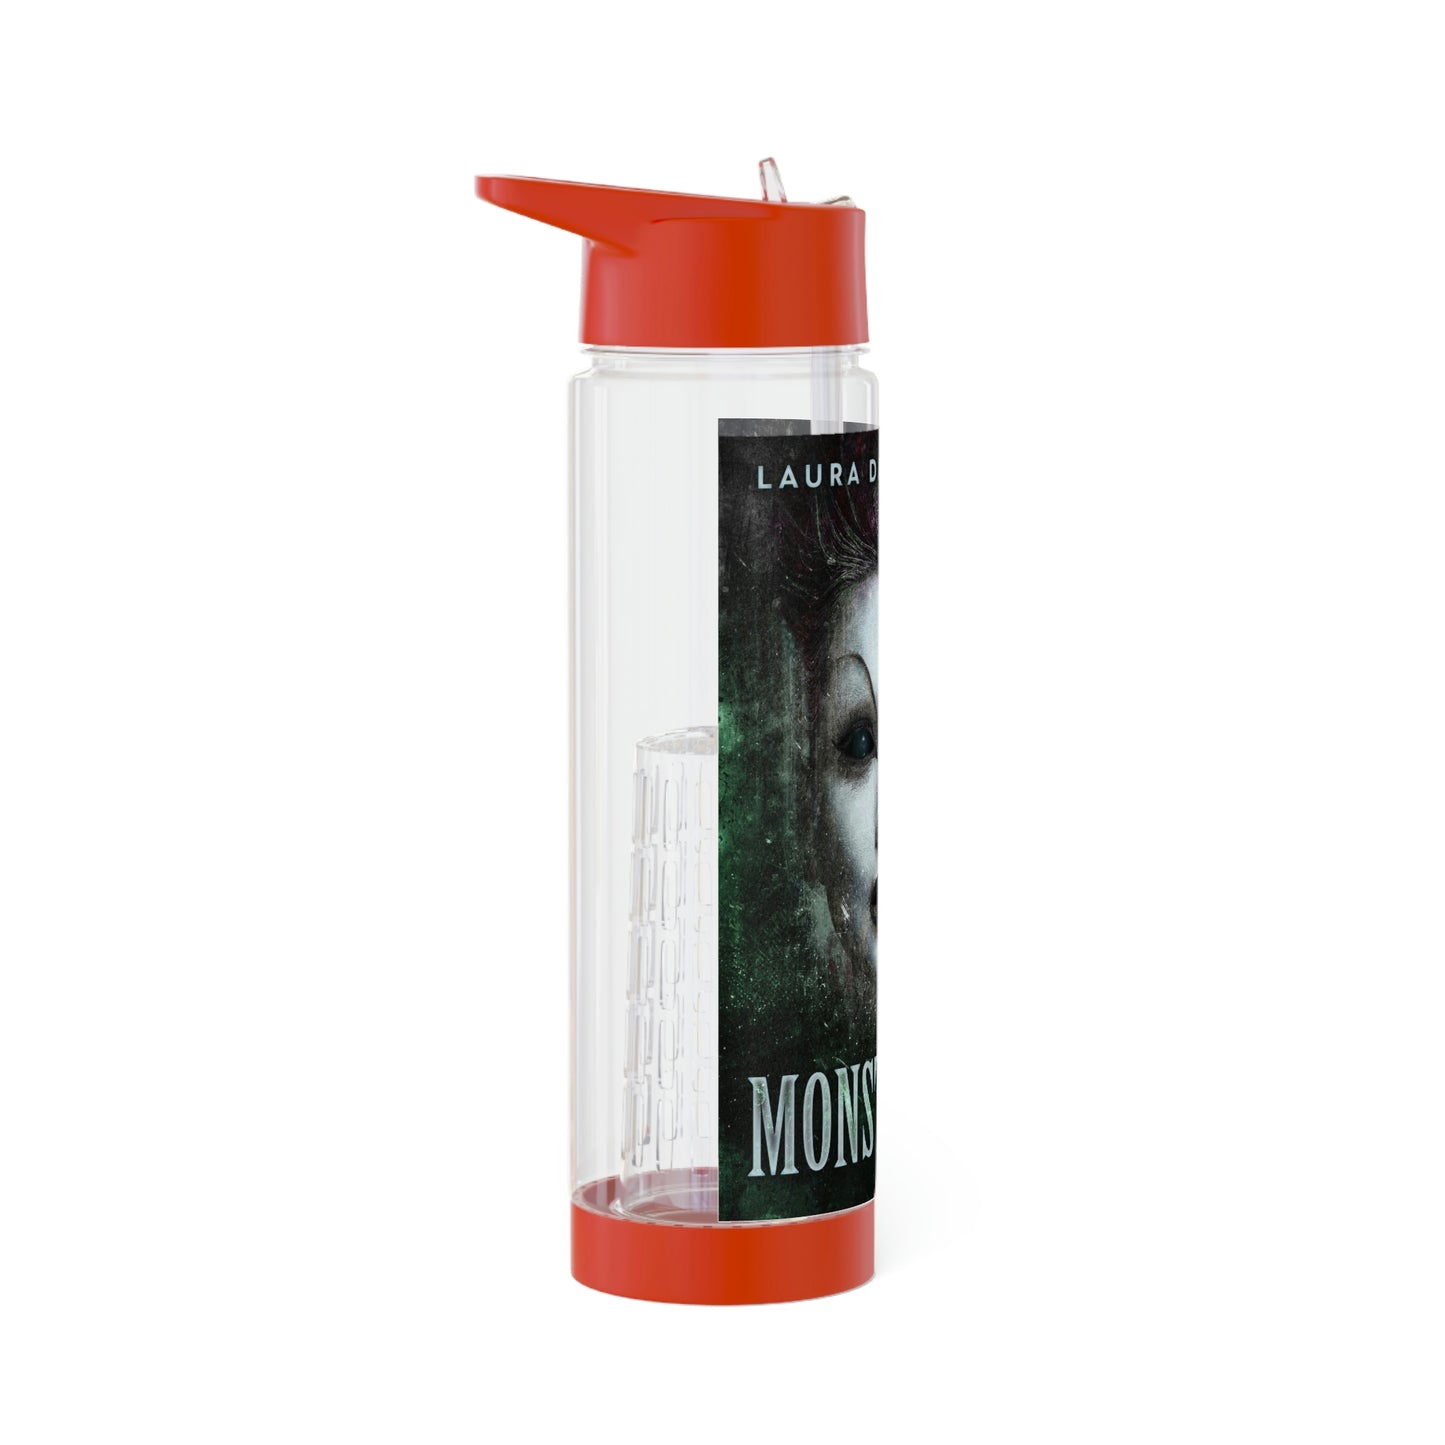 Monstrosity - Infuser Water Bottle